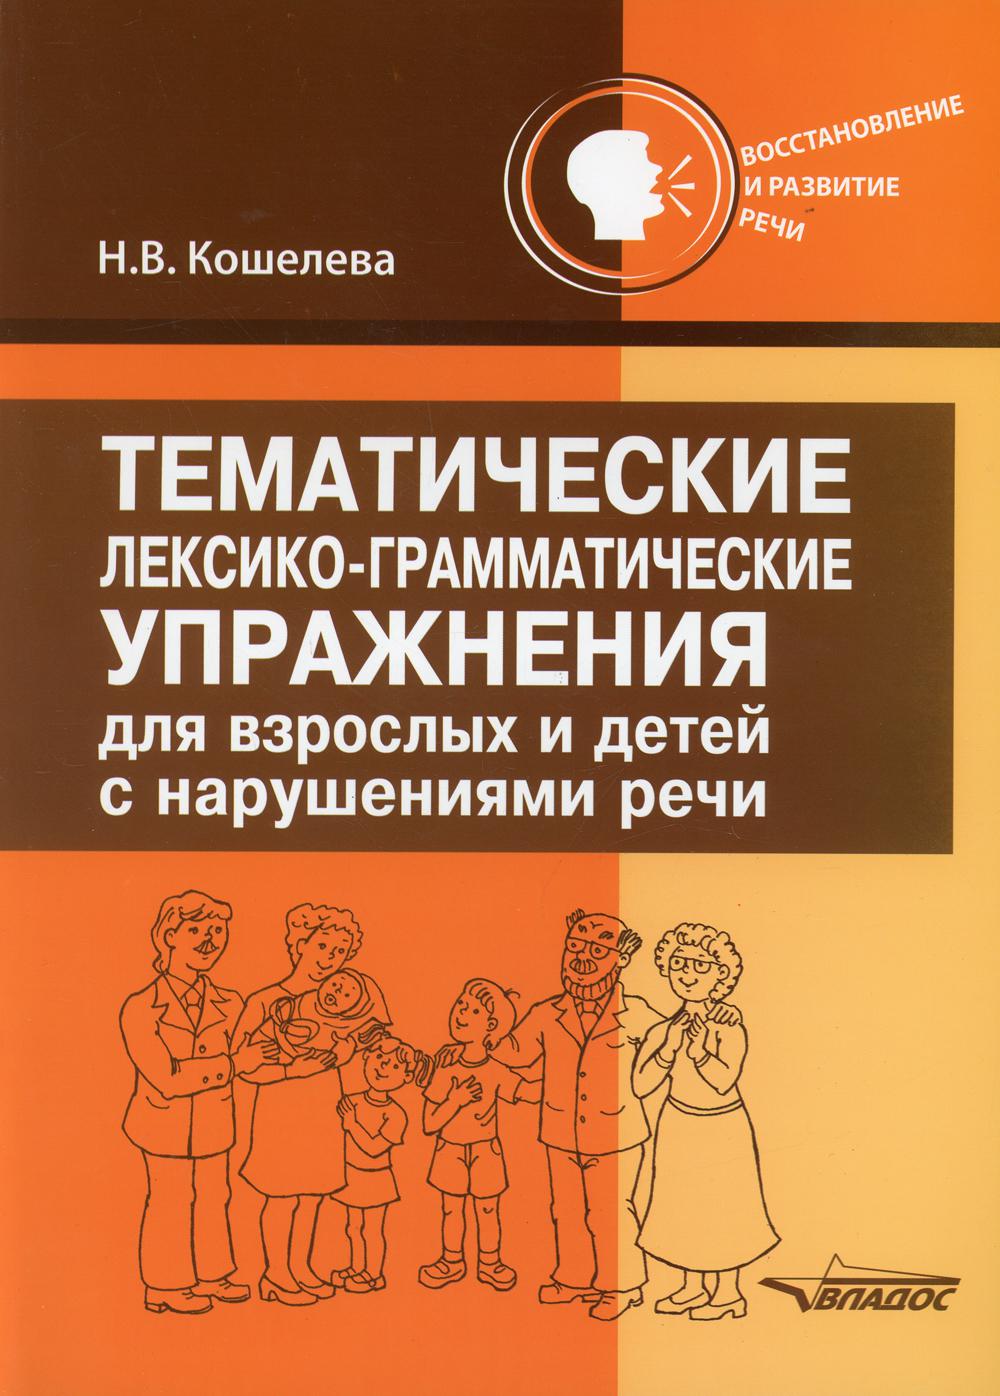 фото Книга тематические лексико-грамматические упражнения для взрослых и детей с нарушениями... владос